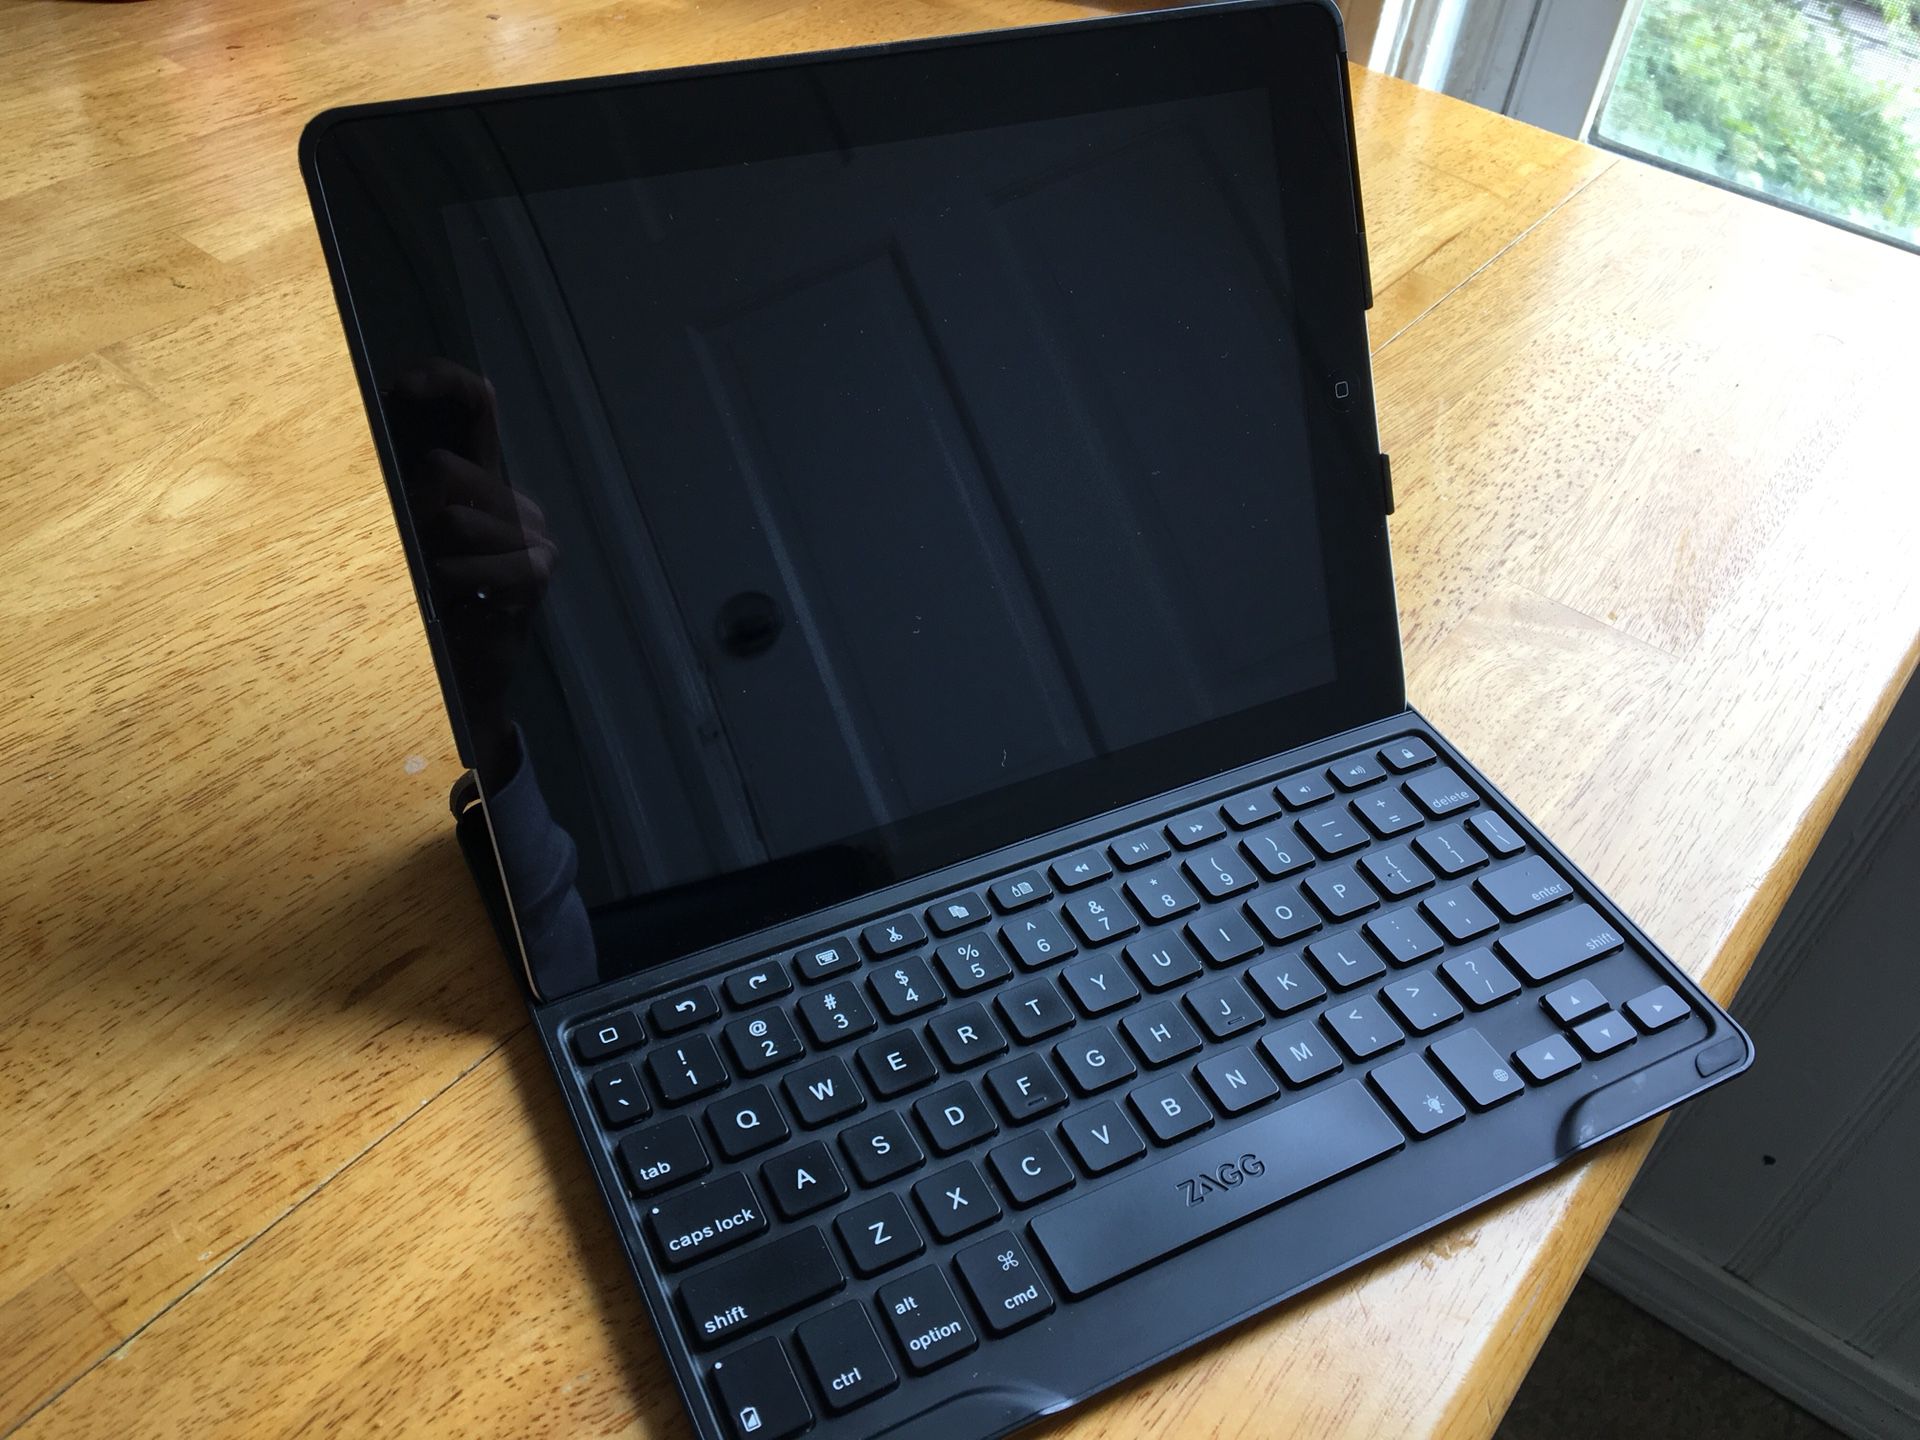 Apple iPad 3rd Gen 16 GB - Black (includes Zagg Keyboard Case + Belkin Charger)